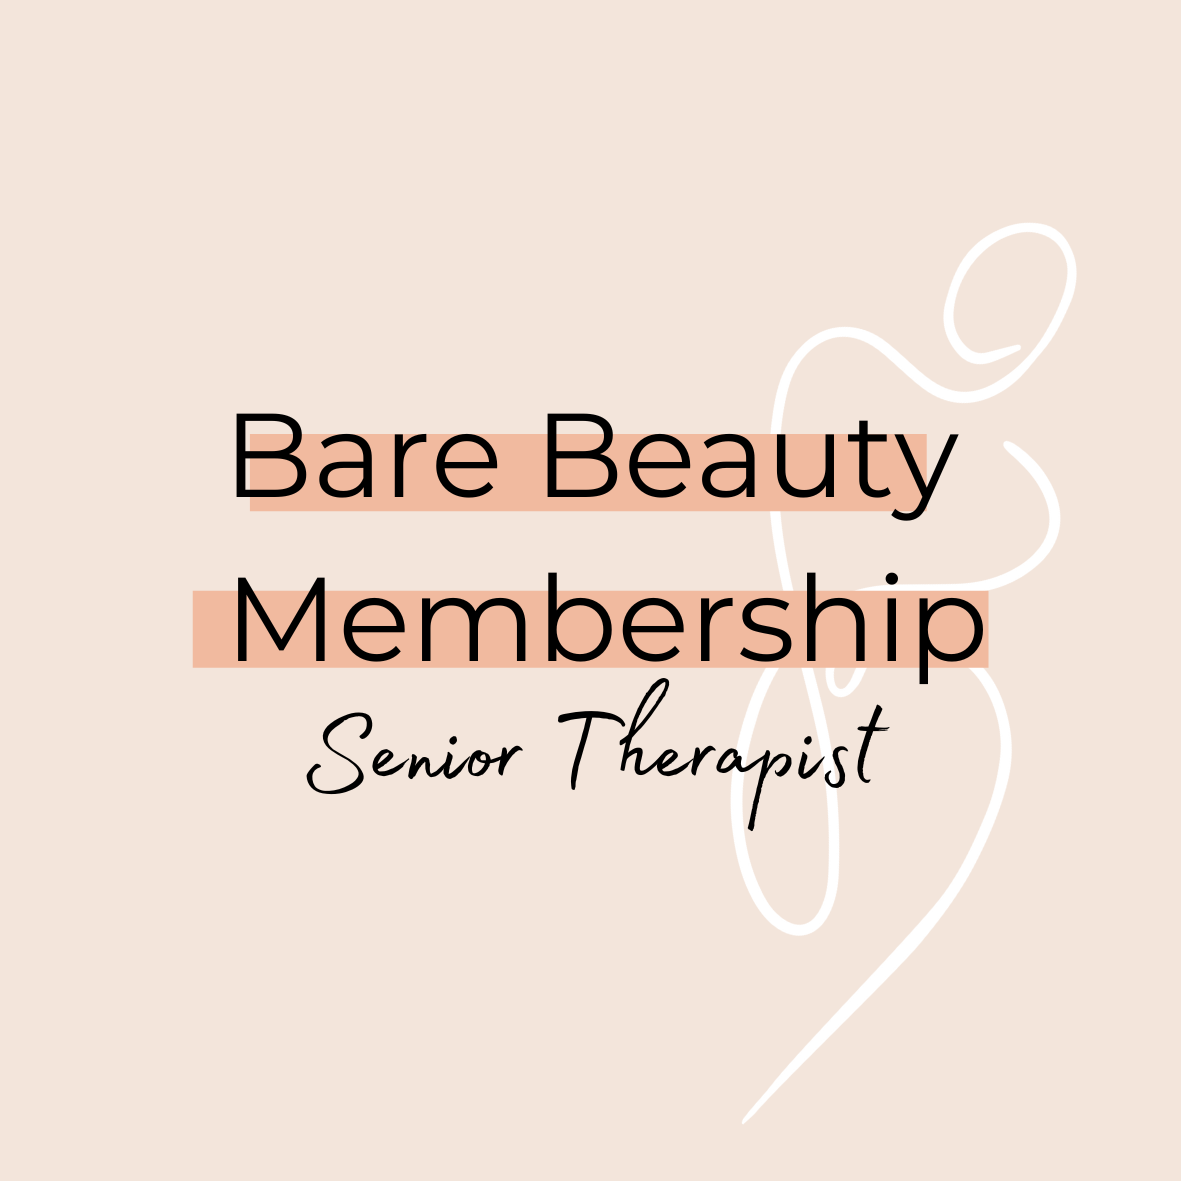 Bare Beauty Membership